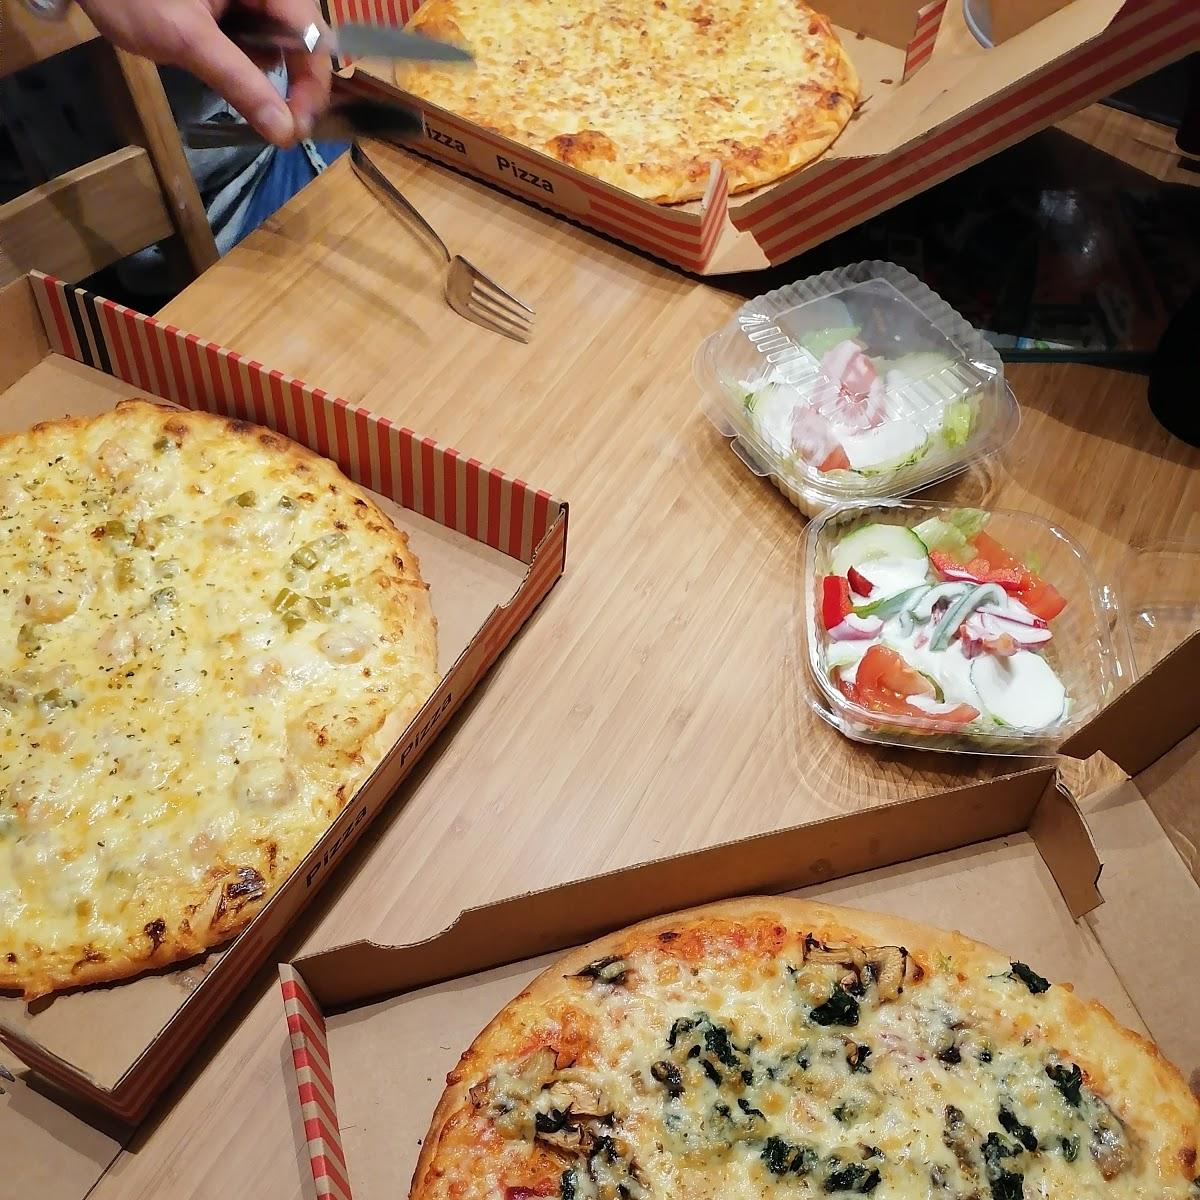 Restaurant "Pizza Prima" in Monheim am Rhein